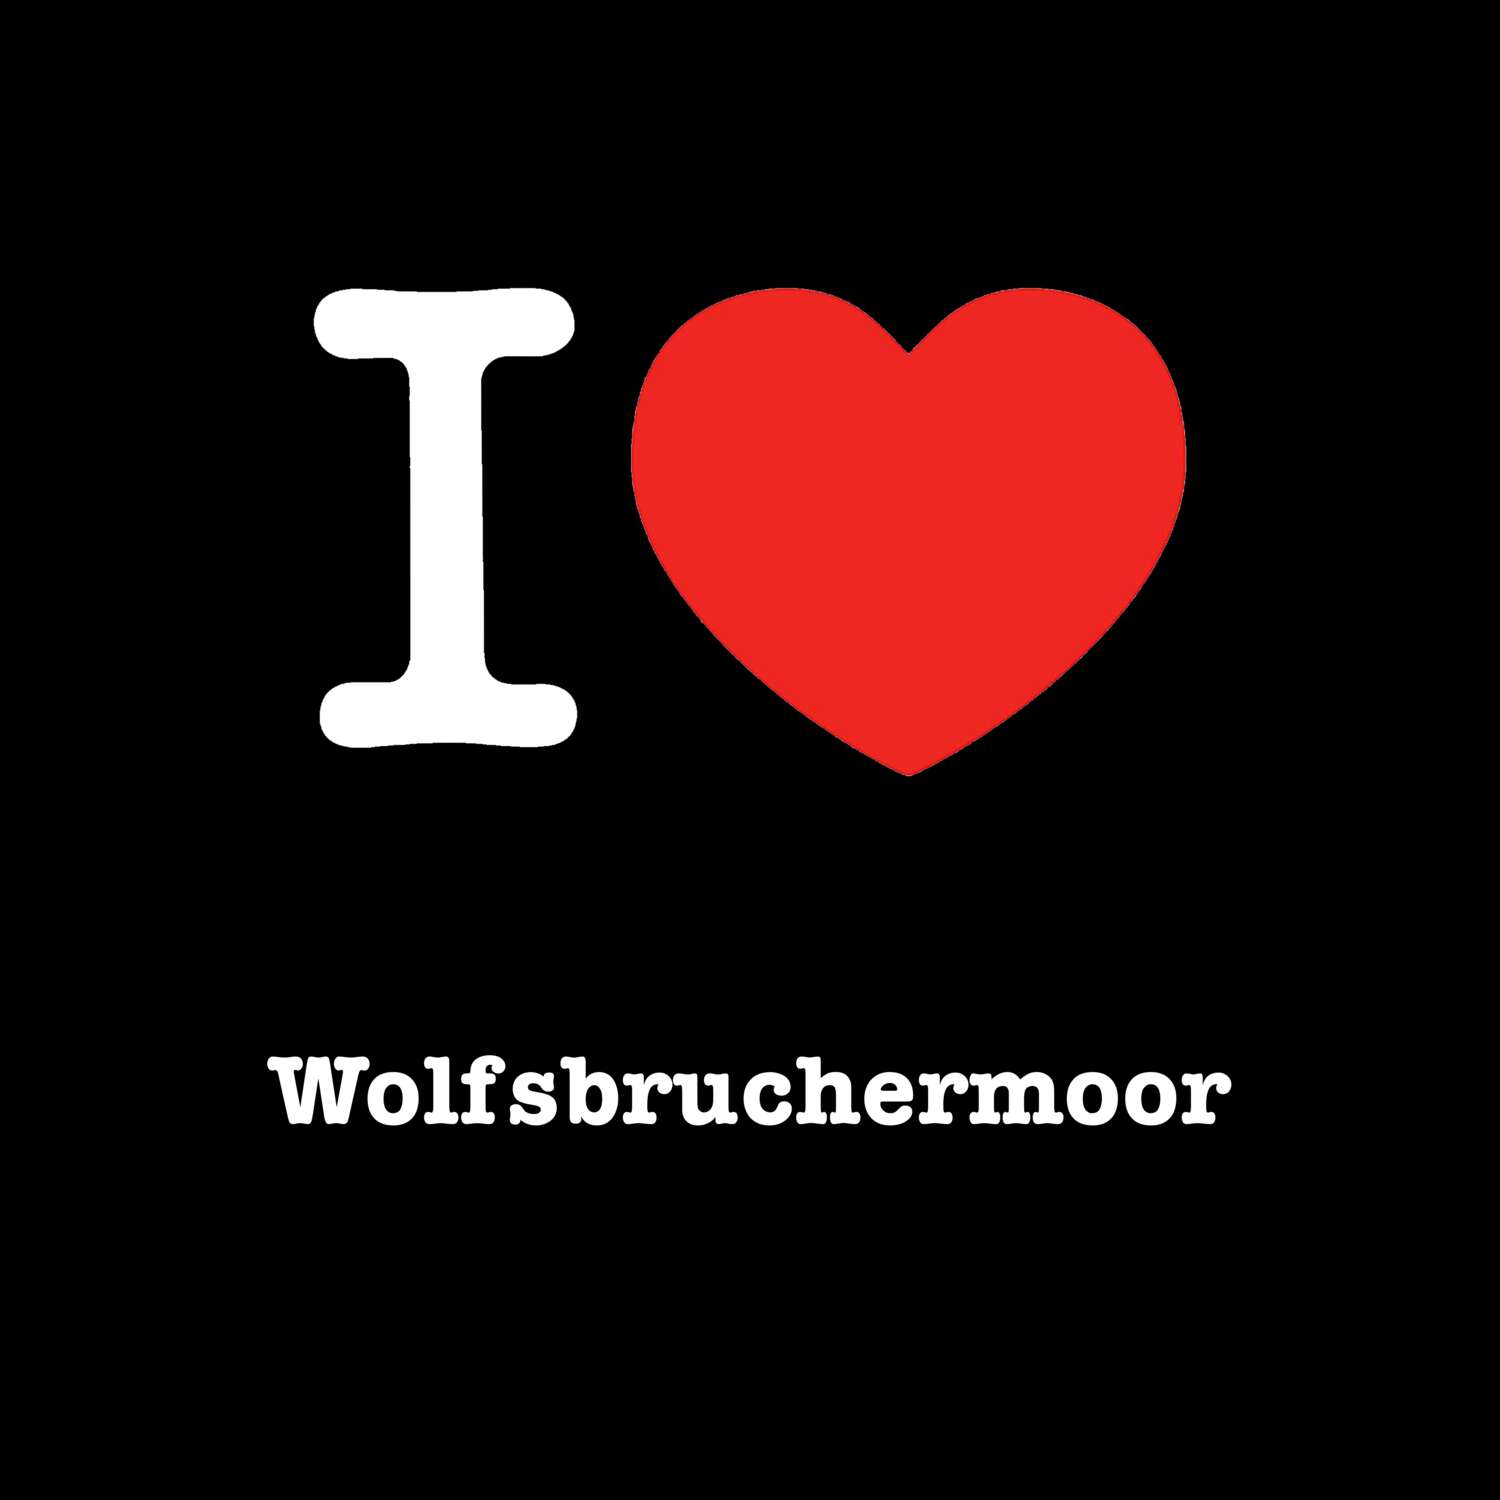 Wolfsbruchermoor T-Shirt »I love«